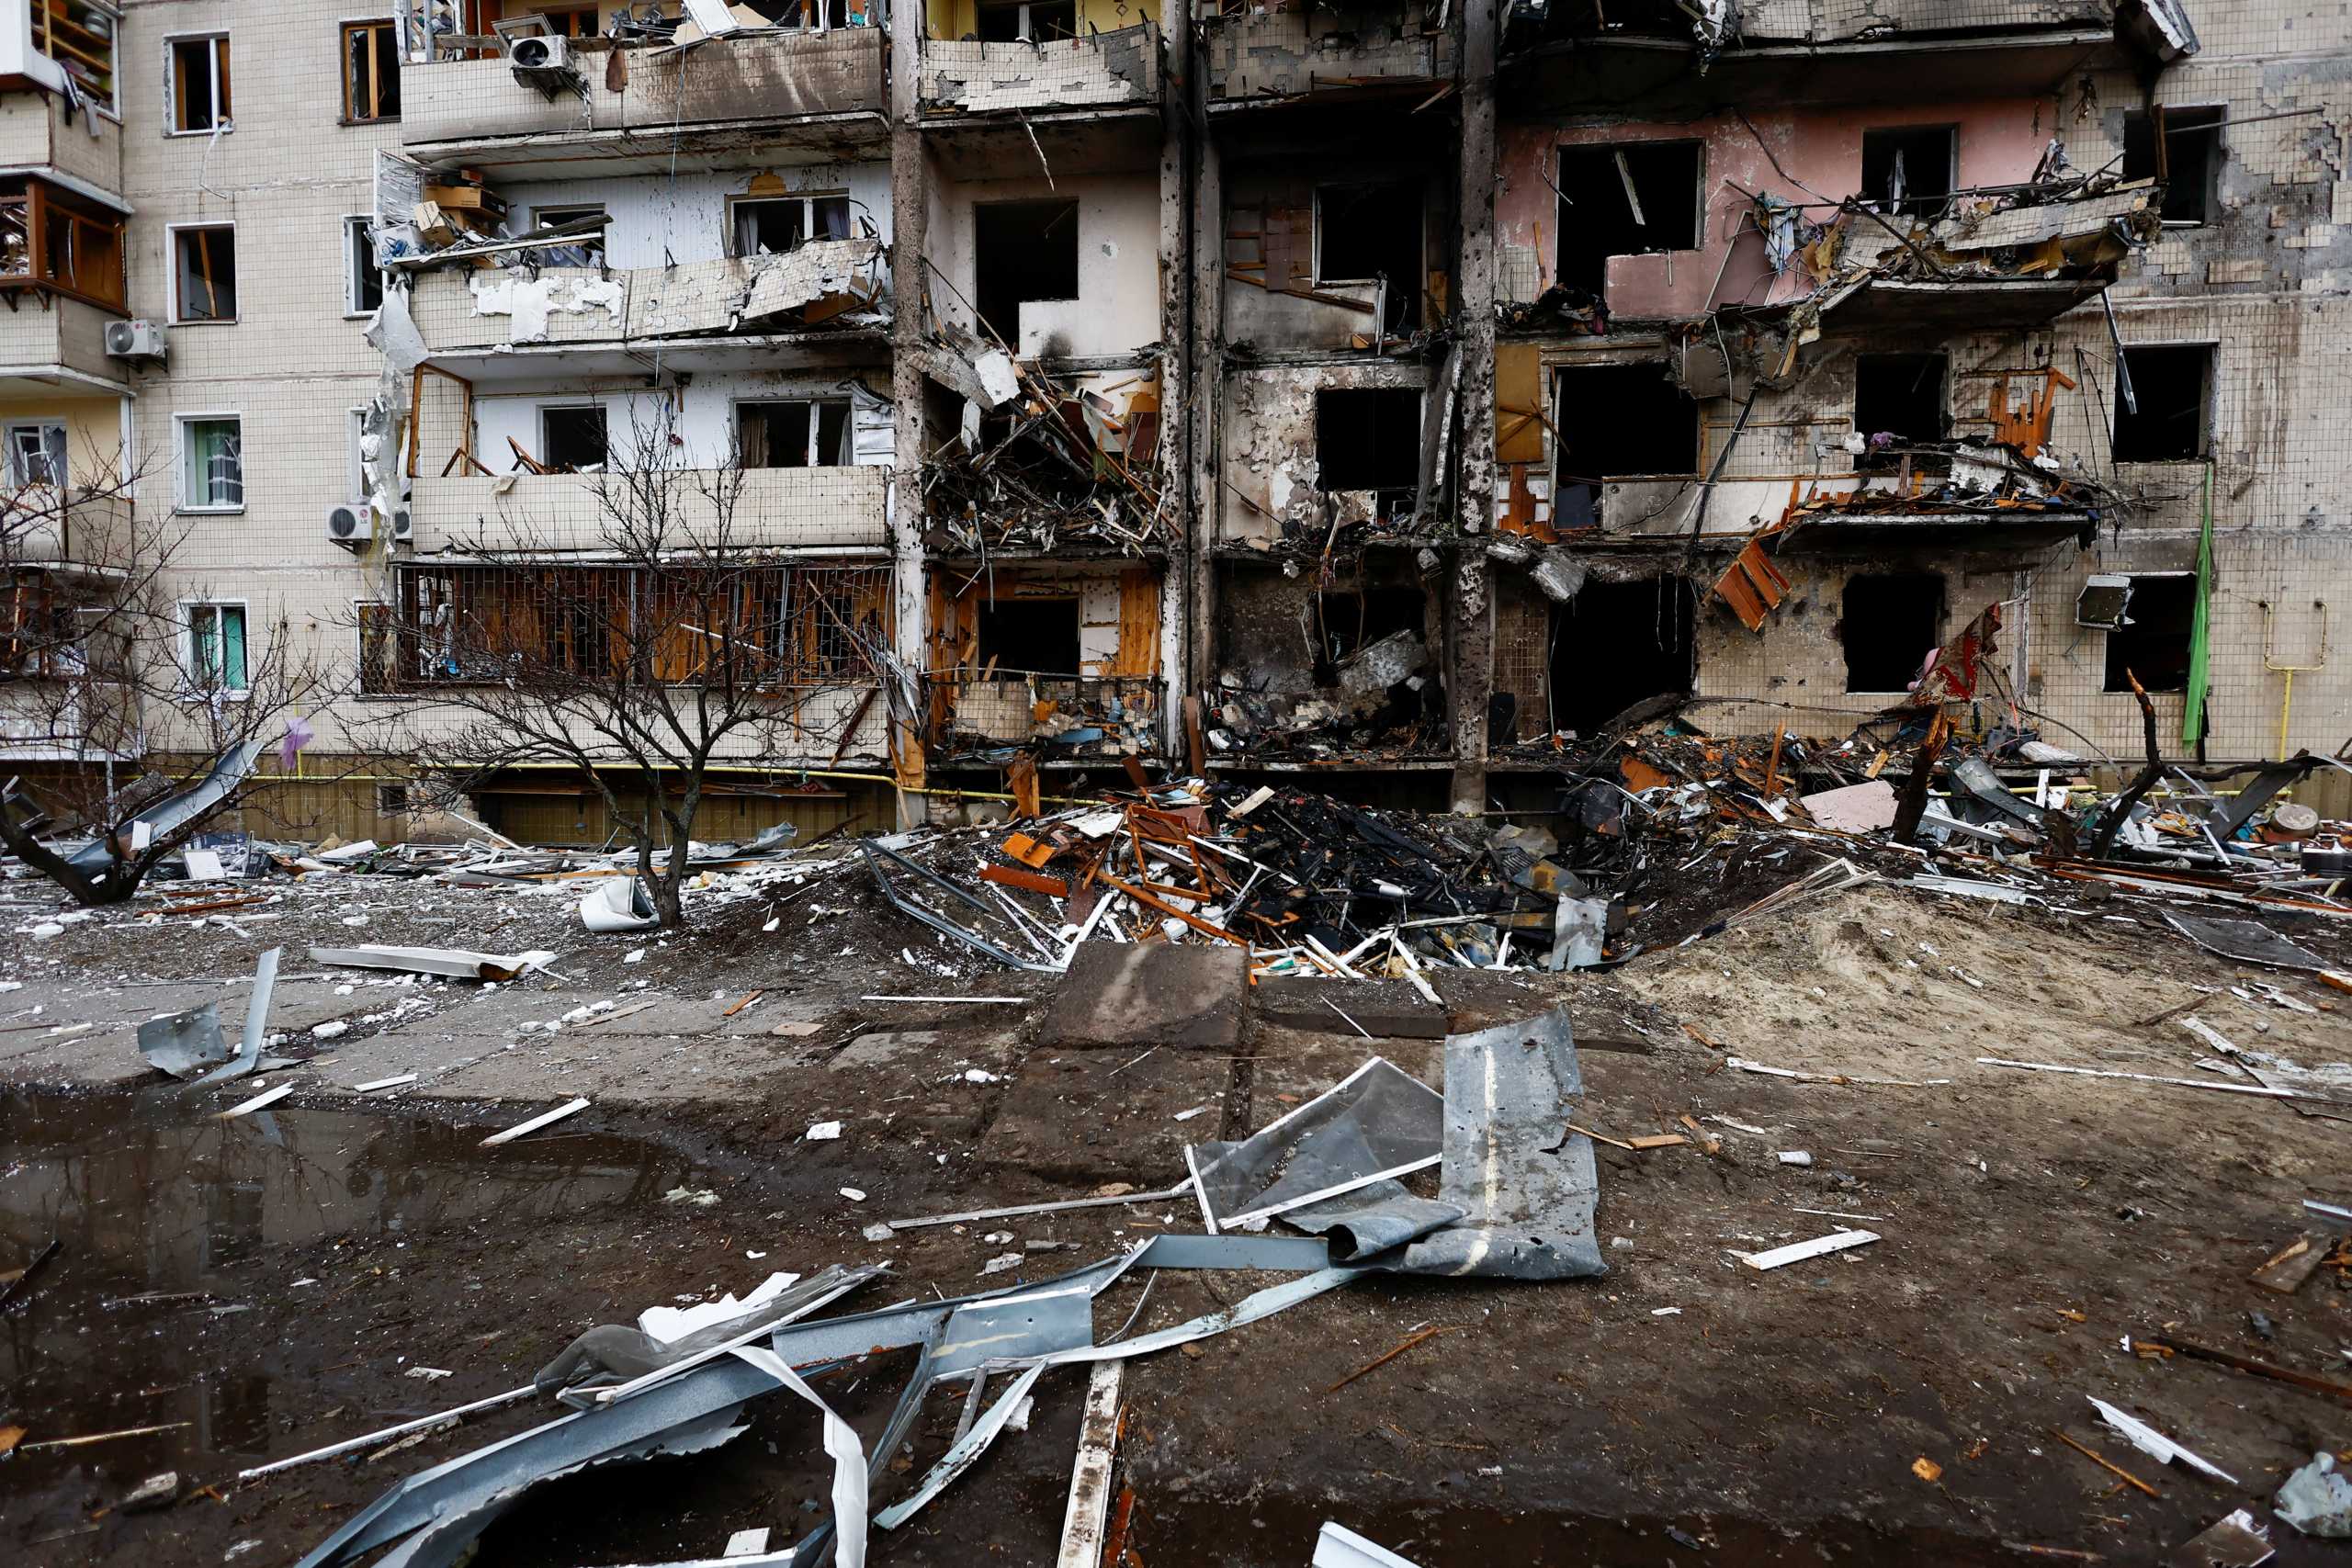 Εισβολή στην Ουκρανία: Το Διεθνές Δικαστήριο μπορεί να ερευνήσει για πιθανά εγκλήματα πολέμου